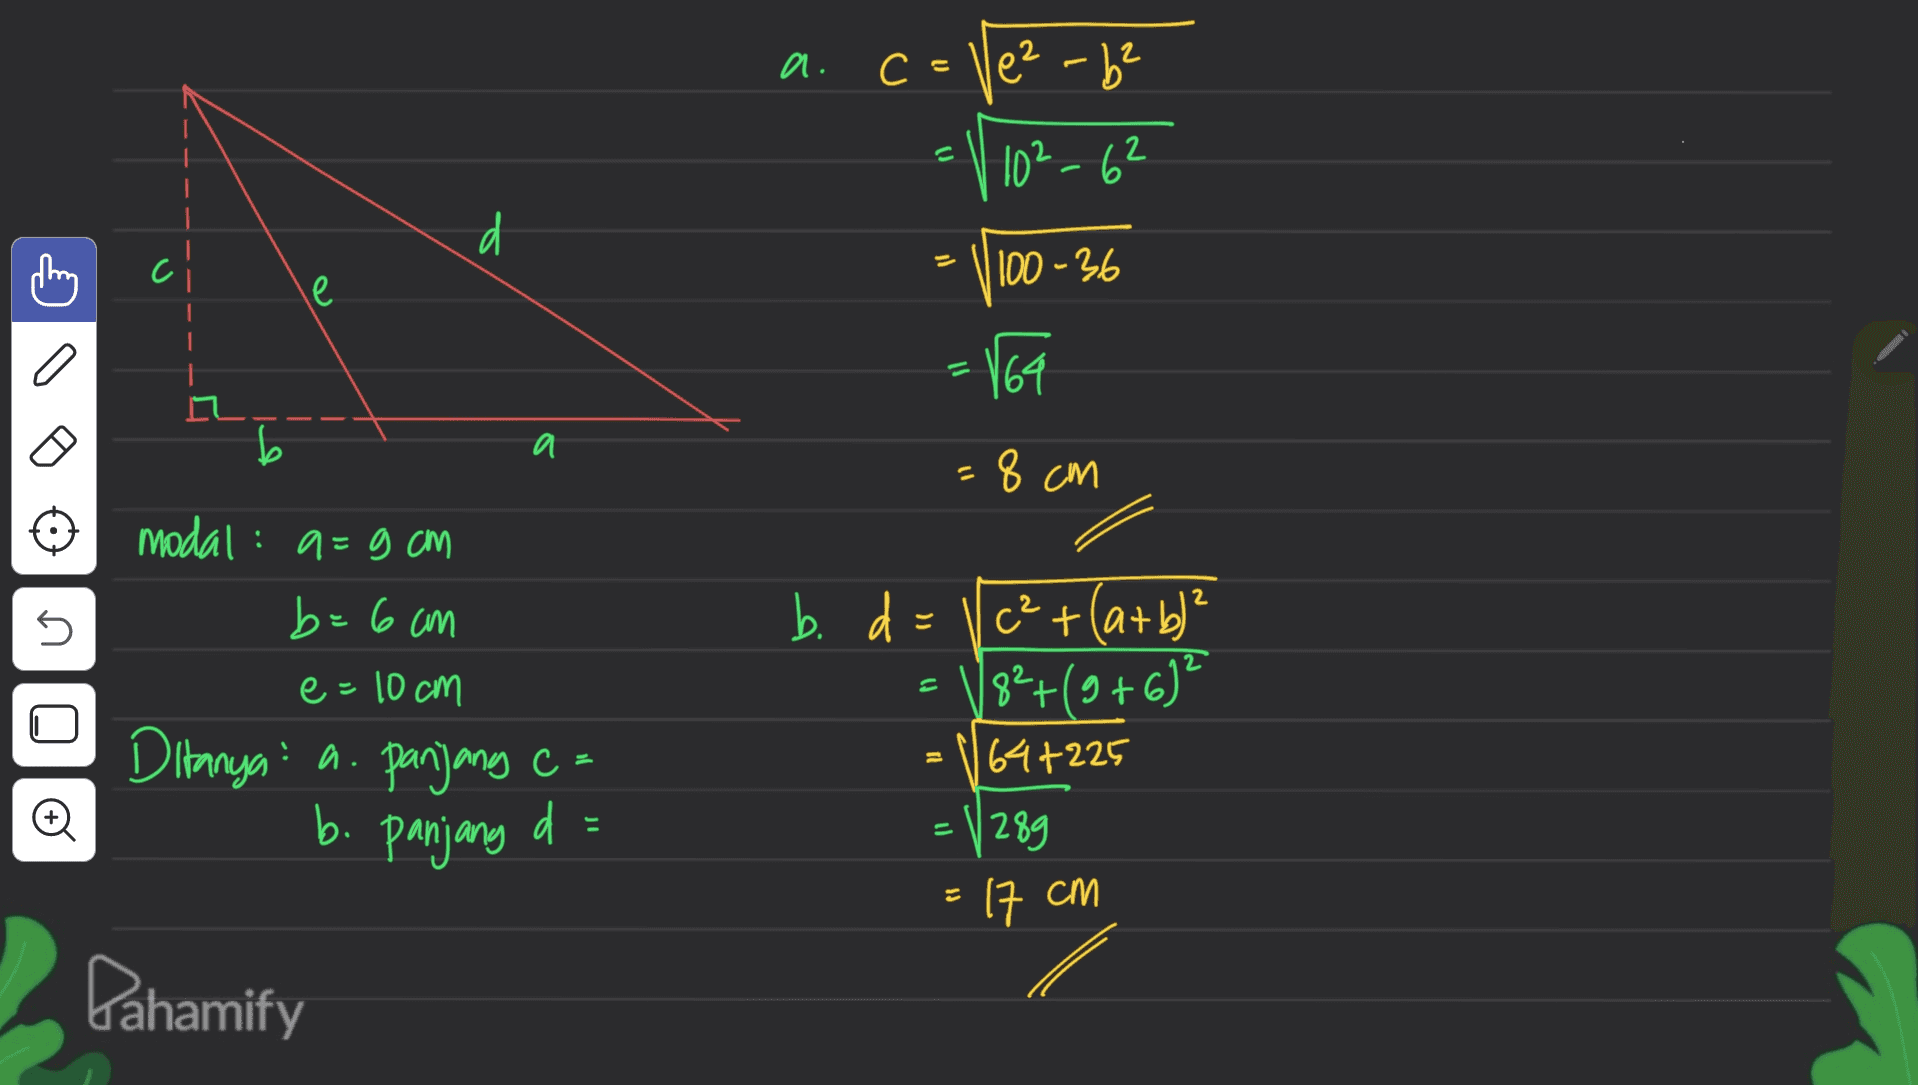 2 a. c = Vez-b² 10²-62 d - 1100 - 36 le 164 b a 8 cm s b. d modal: a=9 cm =9 b=6 cm e=10cm Ditanya: a. panjang c= d = c²+(a+b)? 82+(9+6)? 64+225 = 1289 = © b. panjang 17 cm Pahamify 